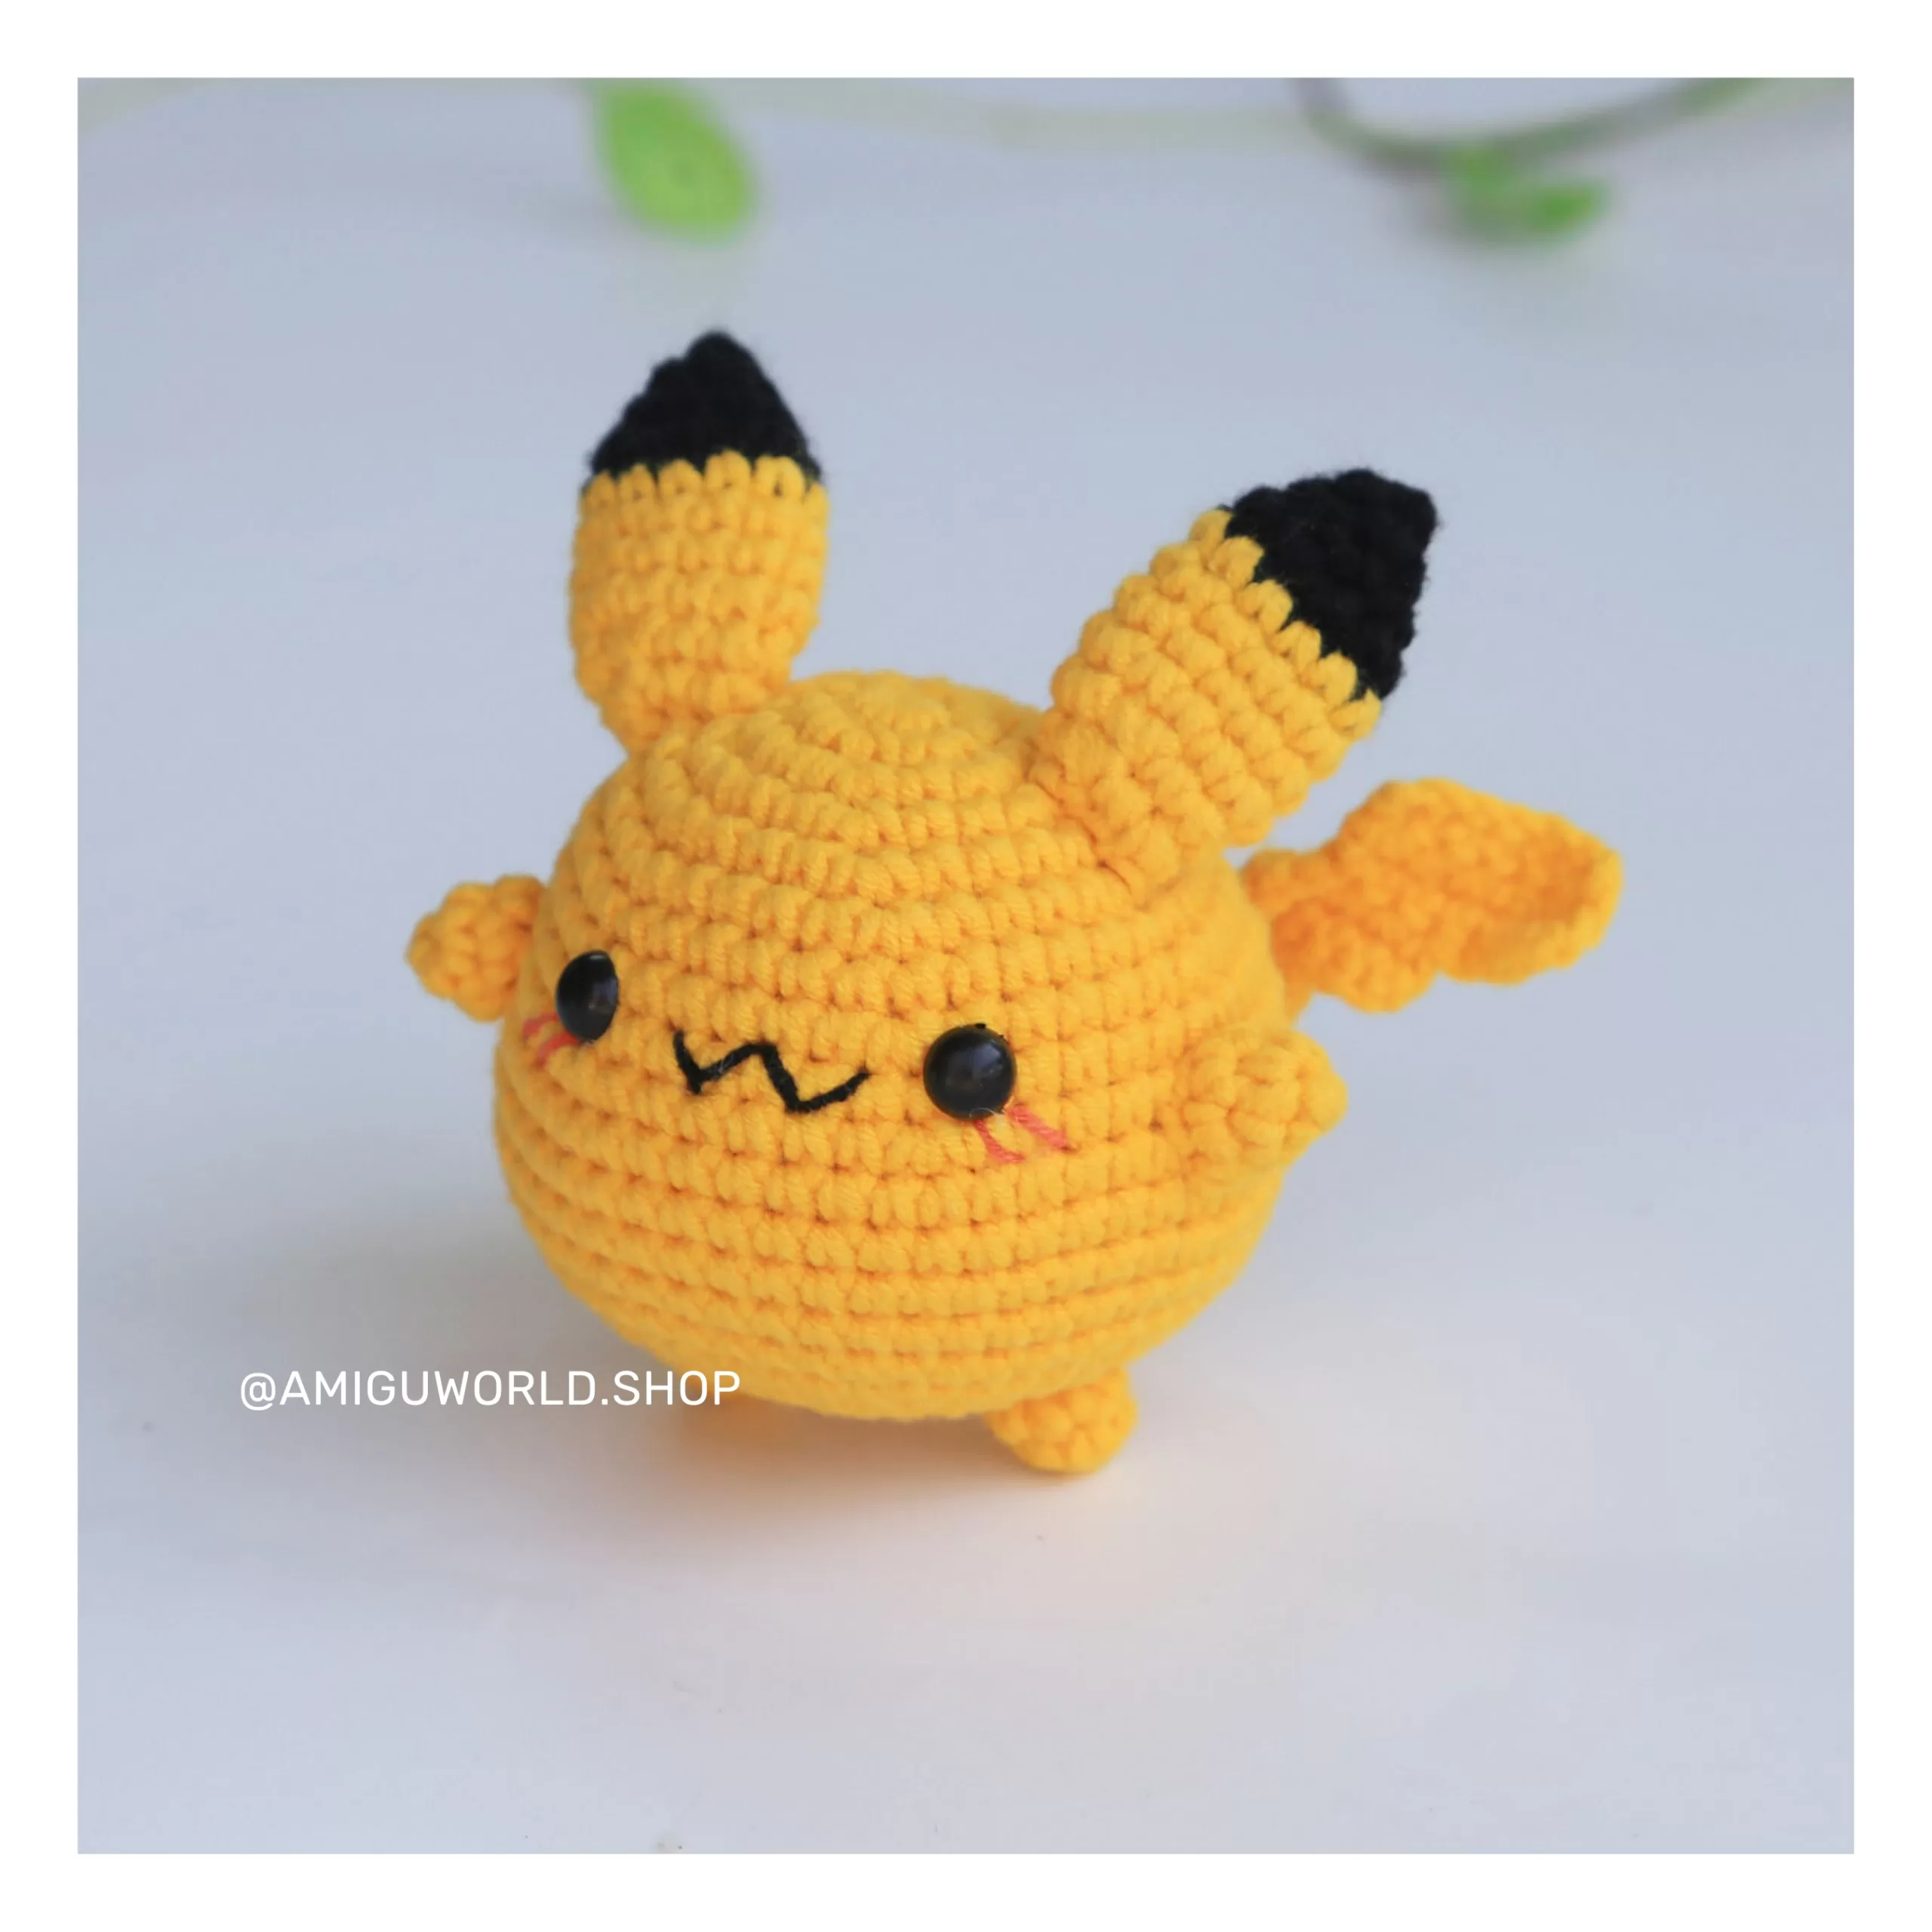 pikachu-amigurumi-doll-finished-by amiguworld (7)